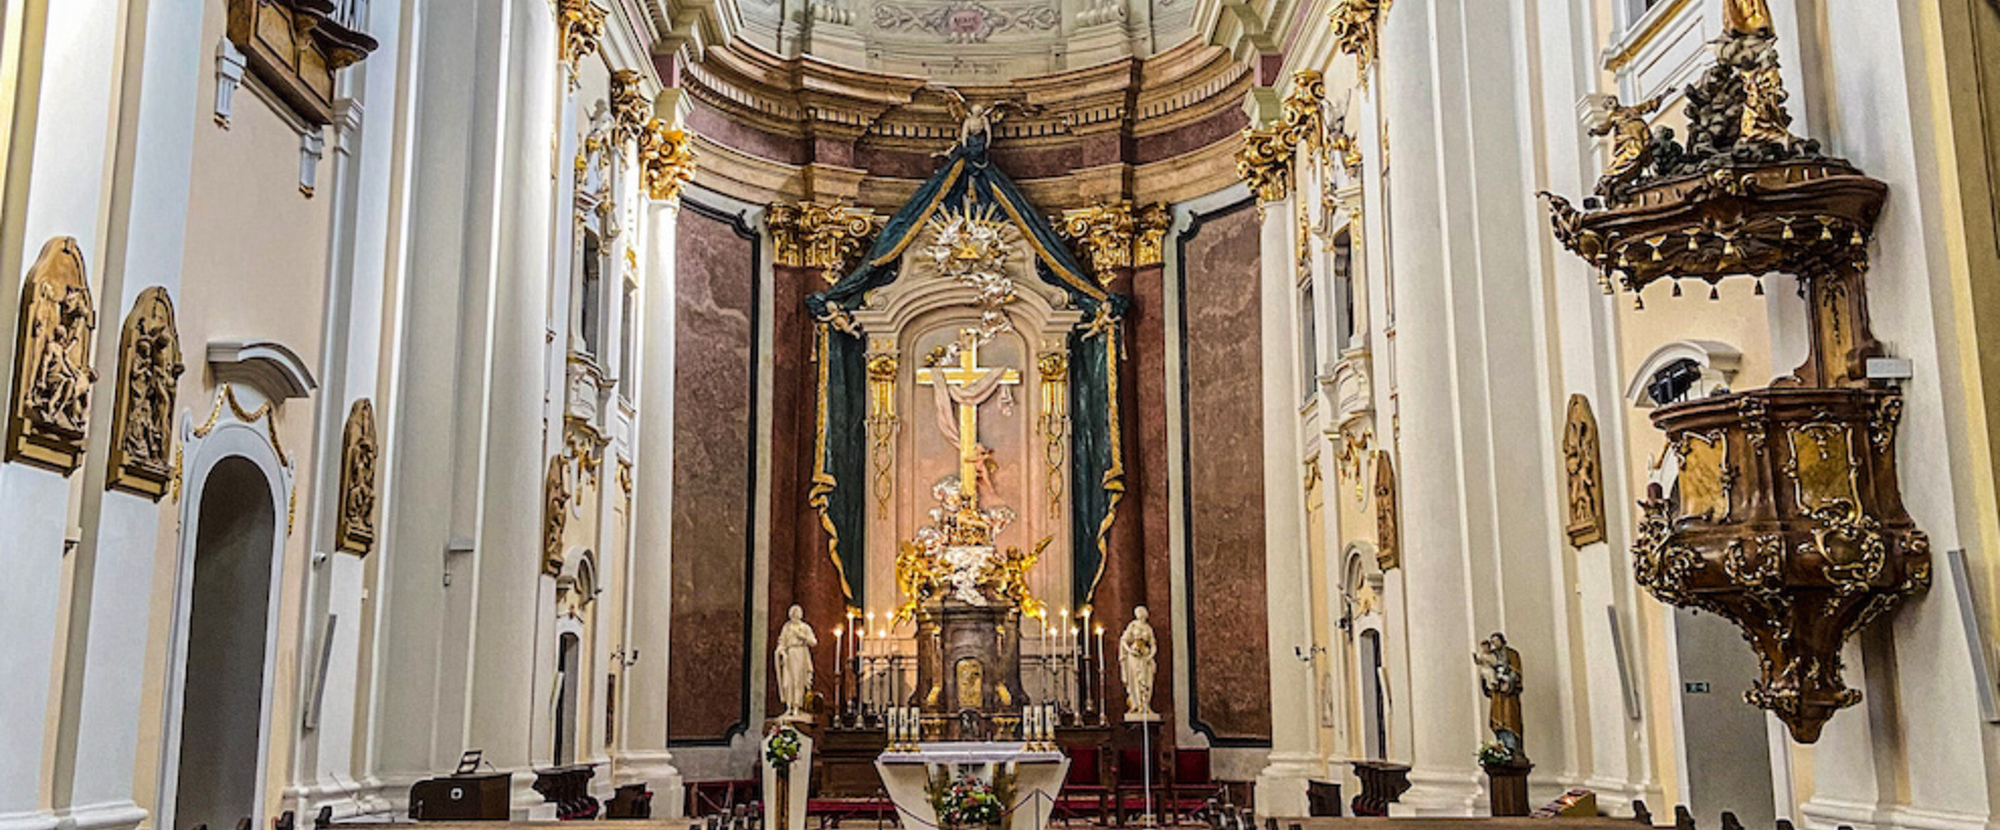 Basilika von den Sieben Schmerzen Mariens am 12. August 2021 in Sastin-Straze (Slowakei).